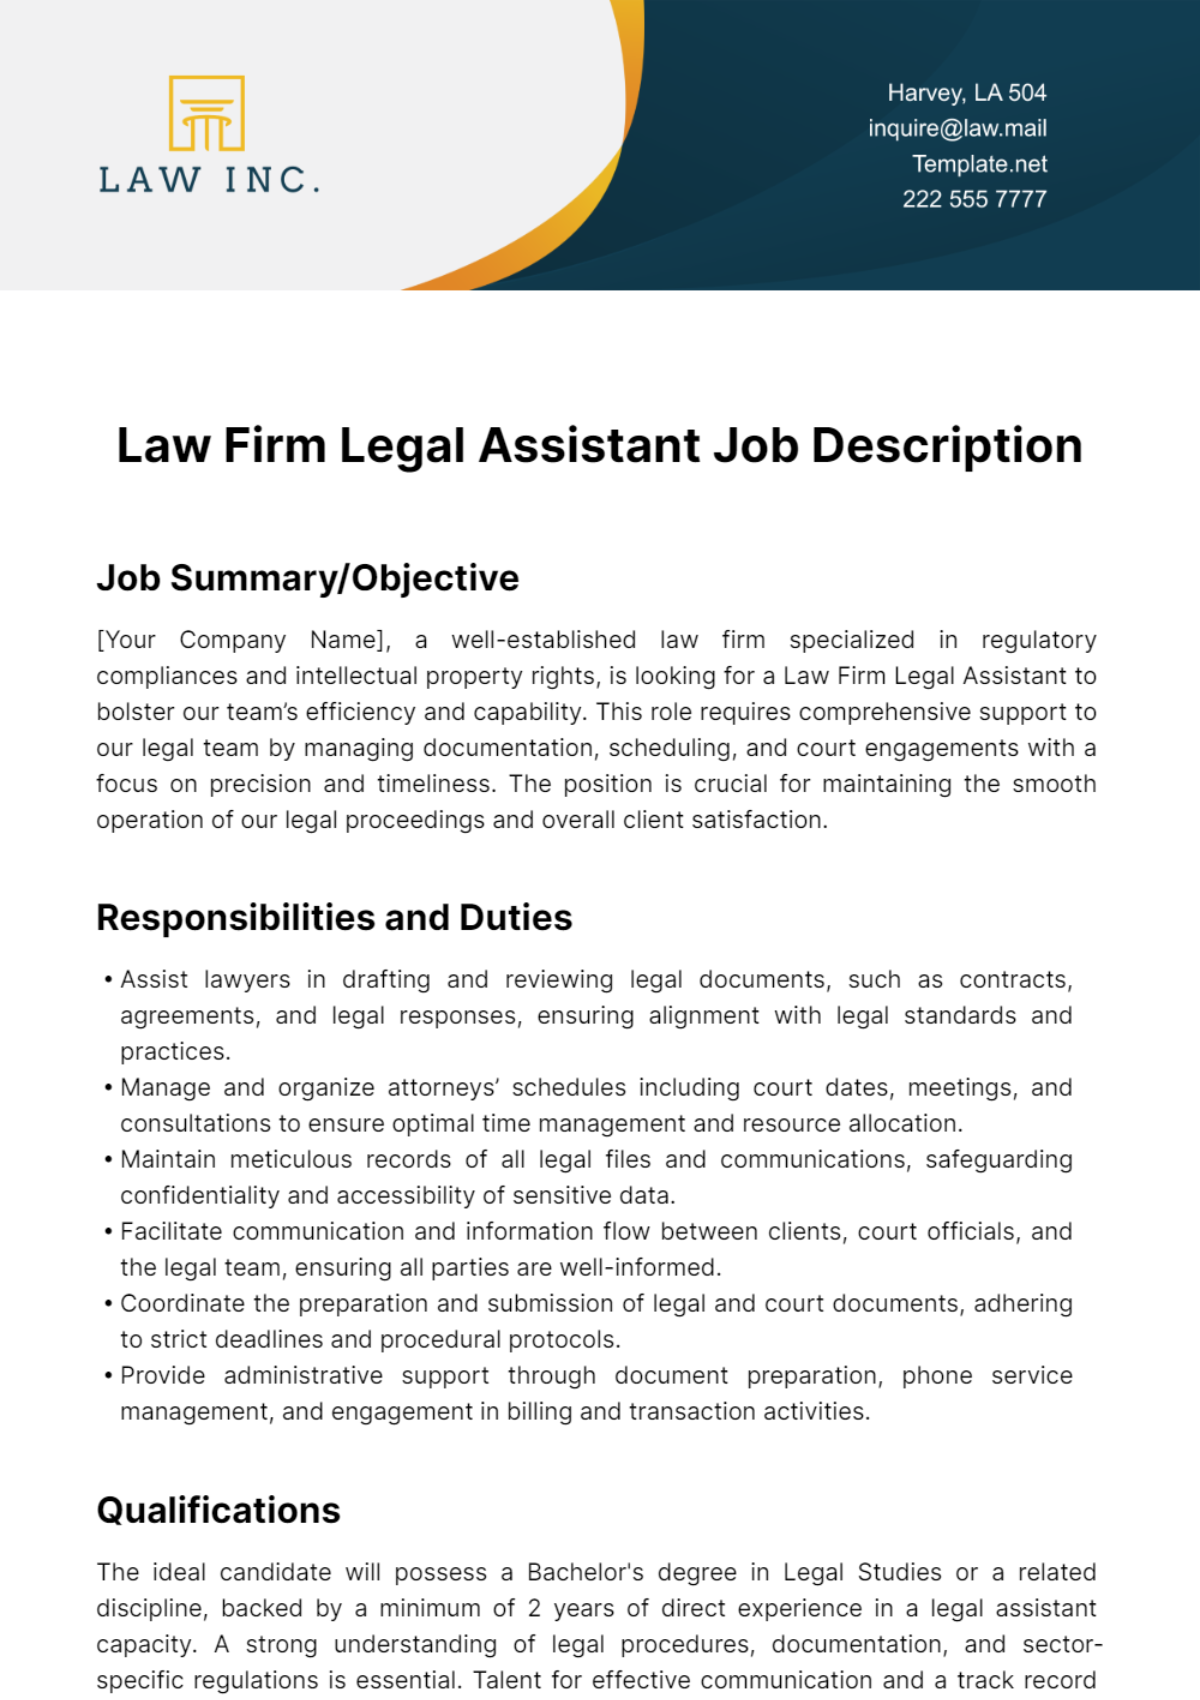 Law Firm Legal Assistant Job Description Template